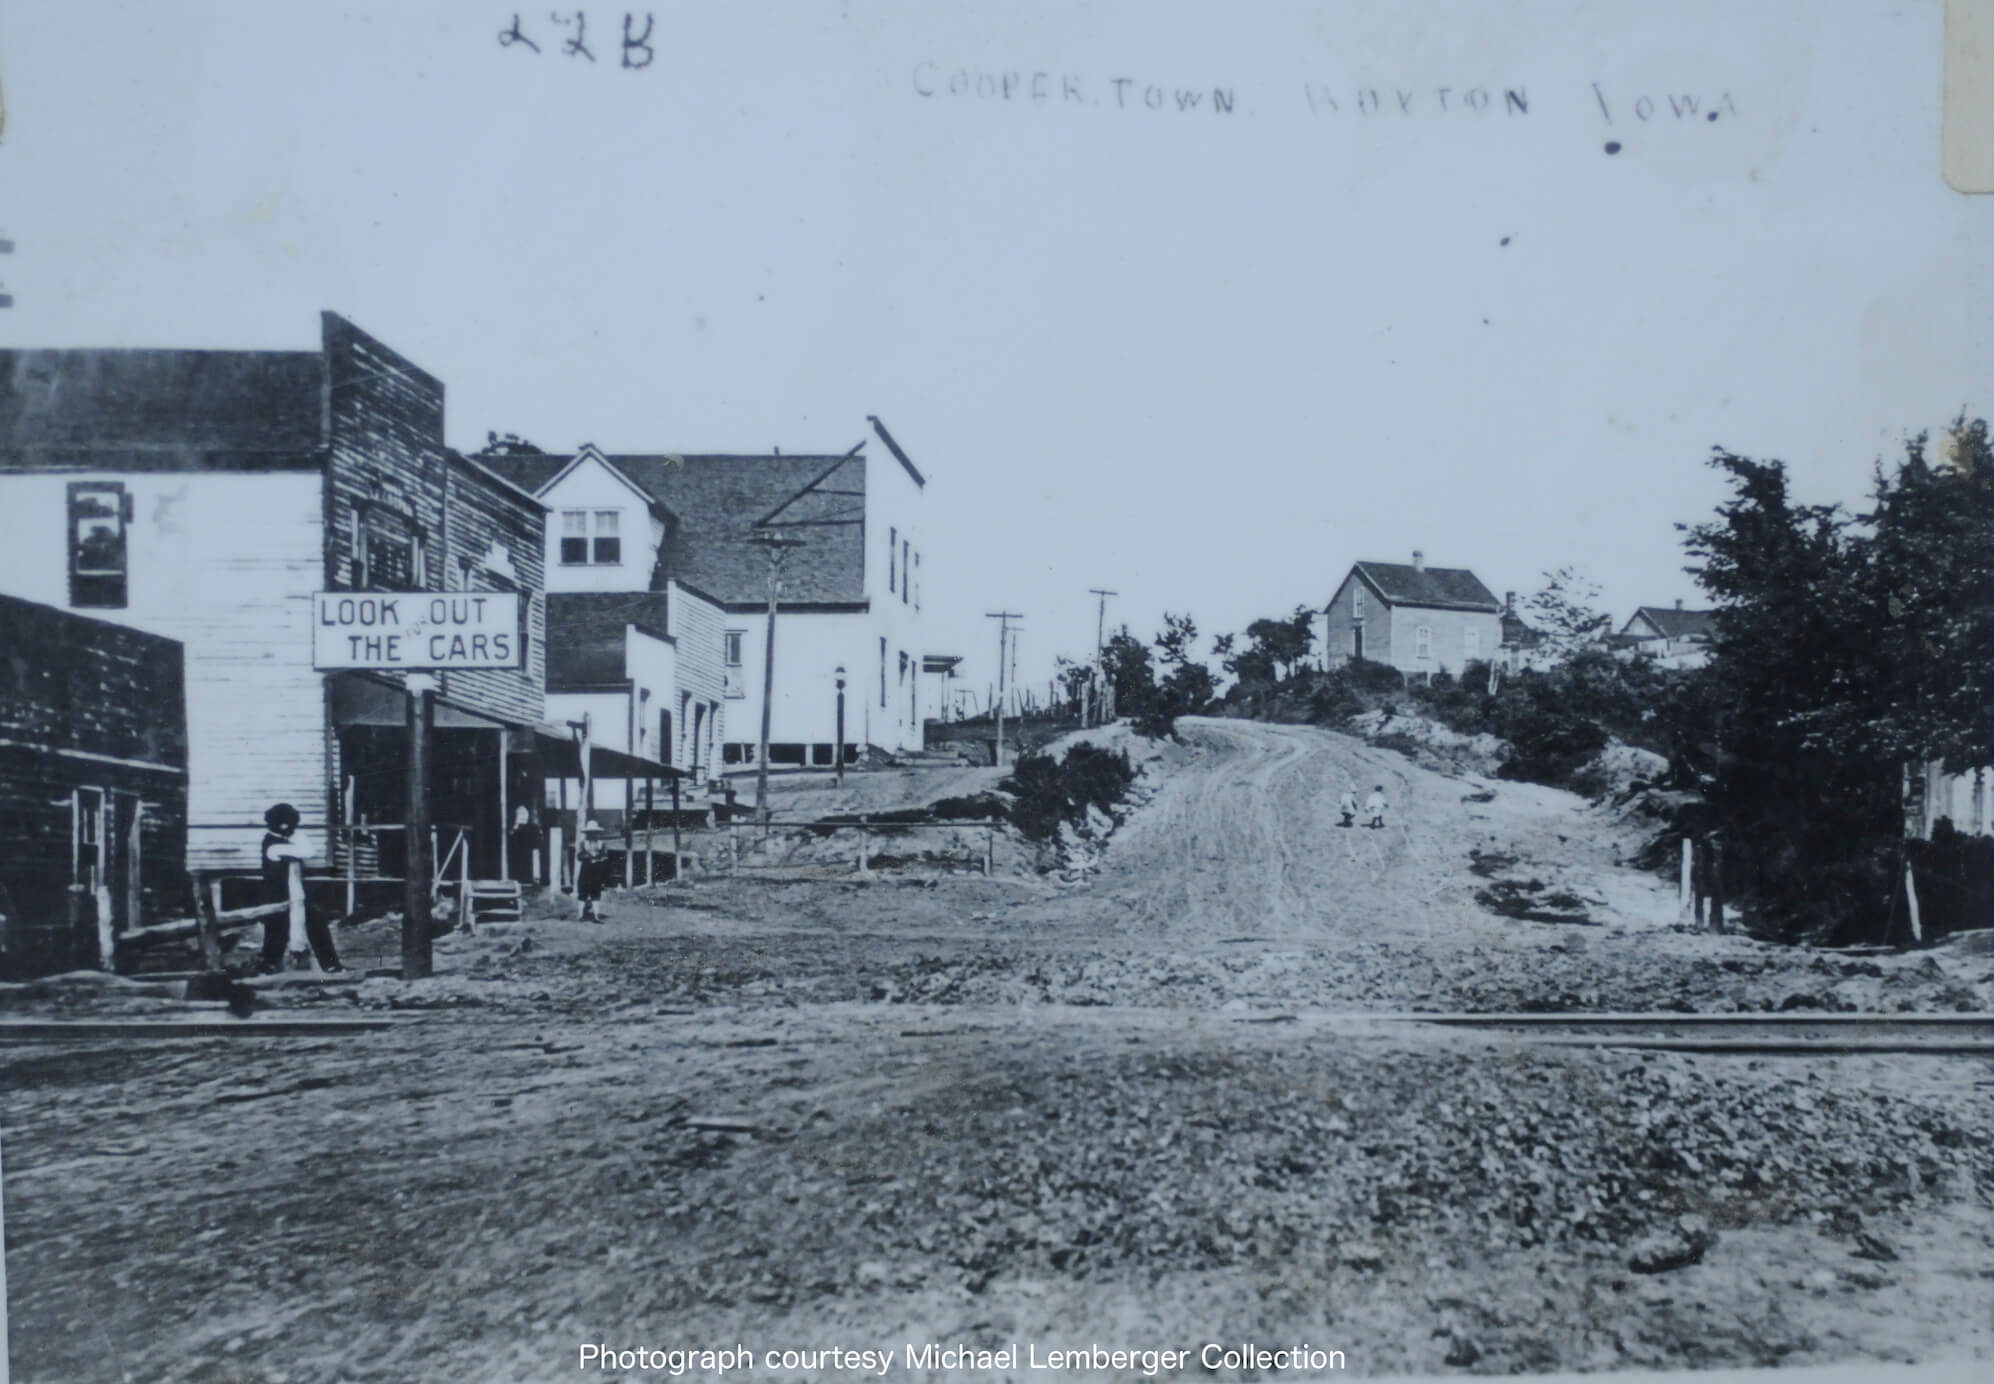 Buxton - Coopertown suburb